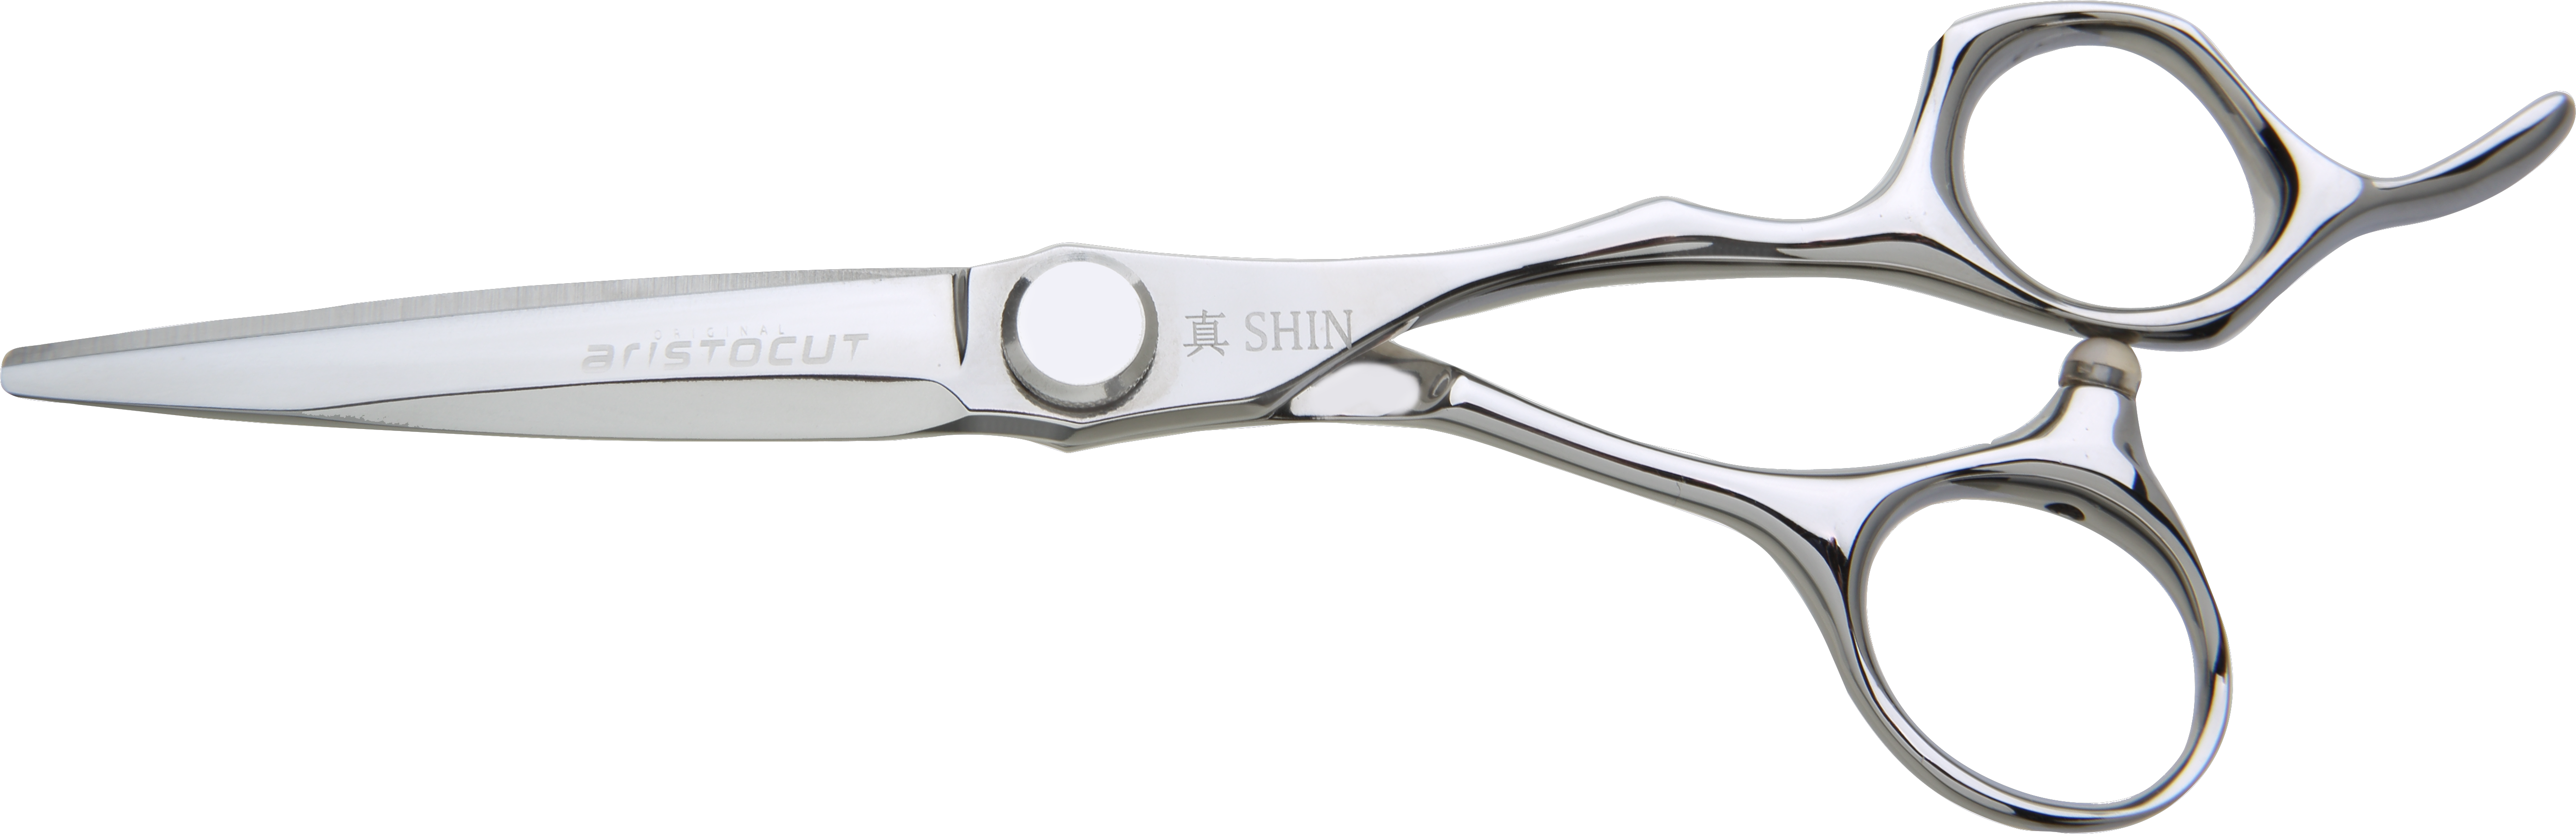 SHIN Hair cutting scissors